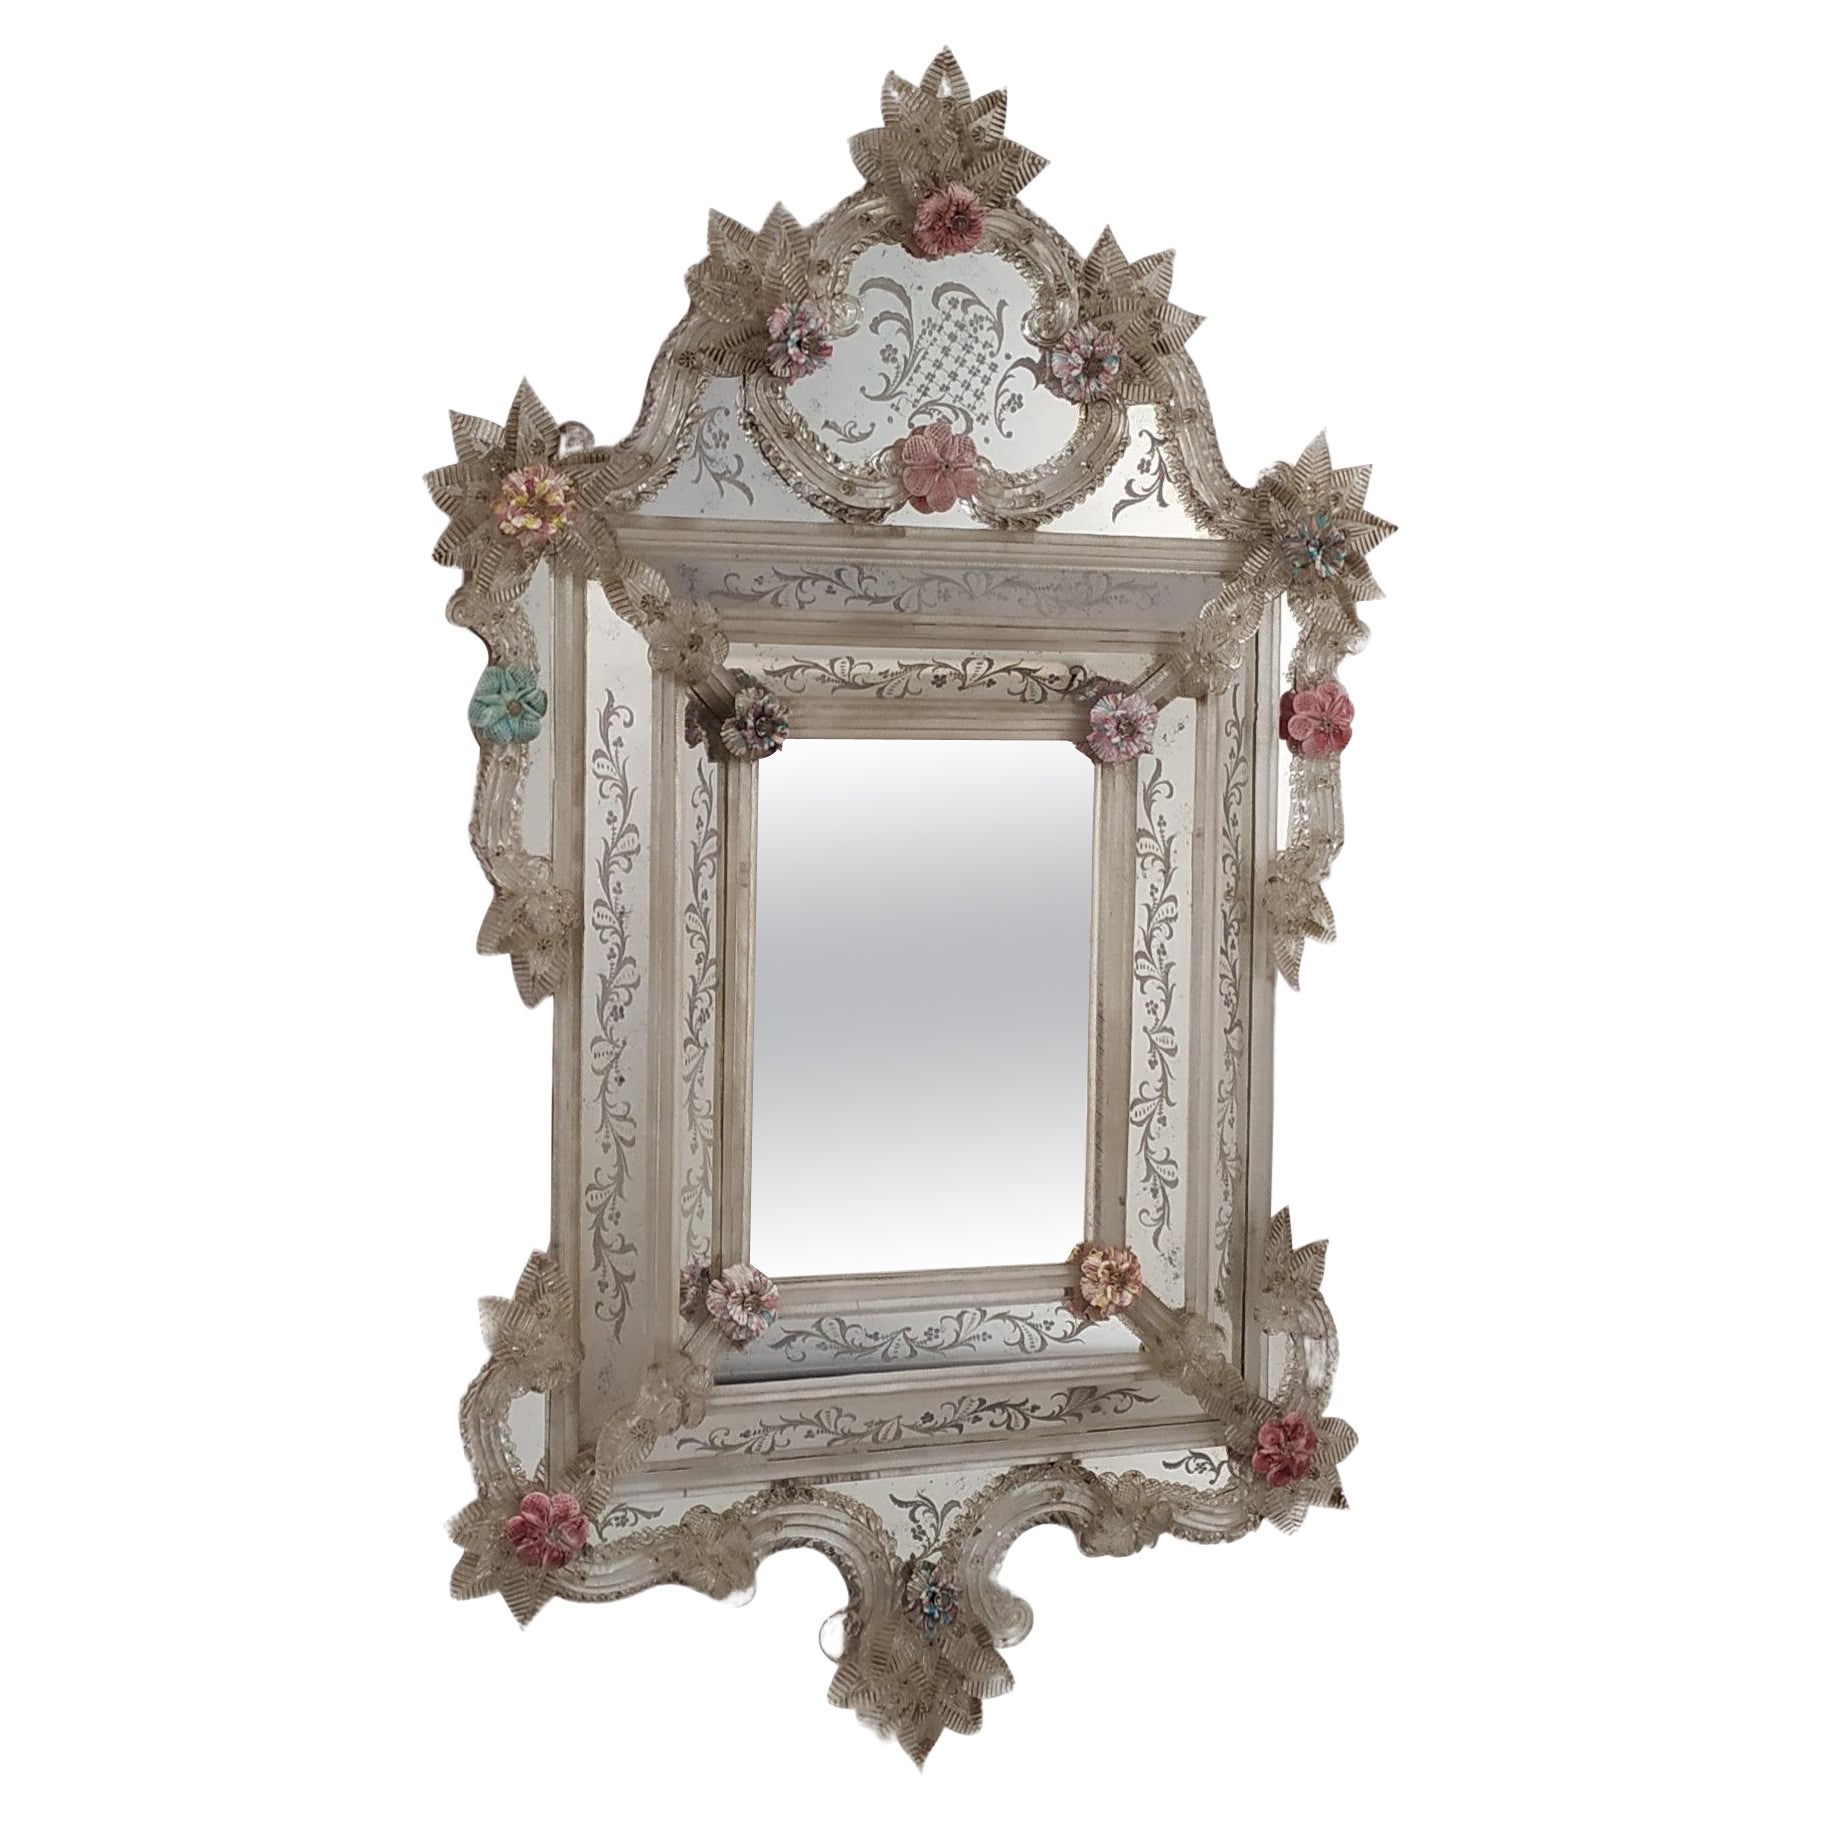  „Laguna“ Reproduktion eines antiken venezianischen Spiegels von Fratelli Tosi Murano